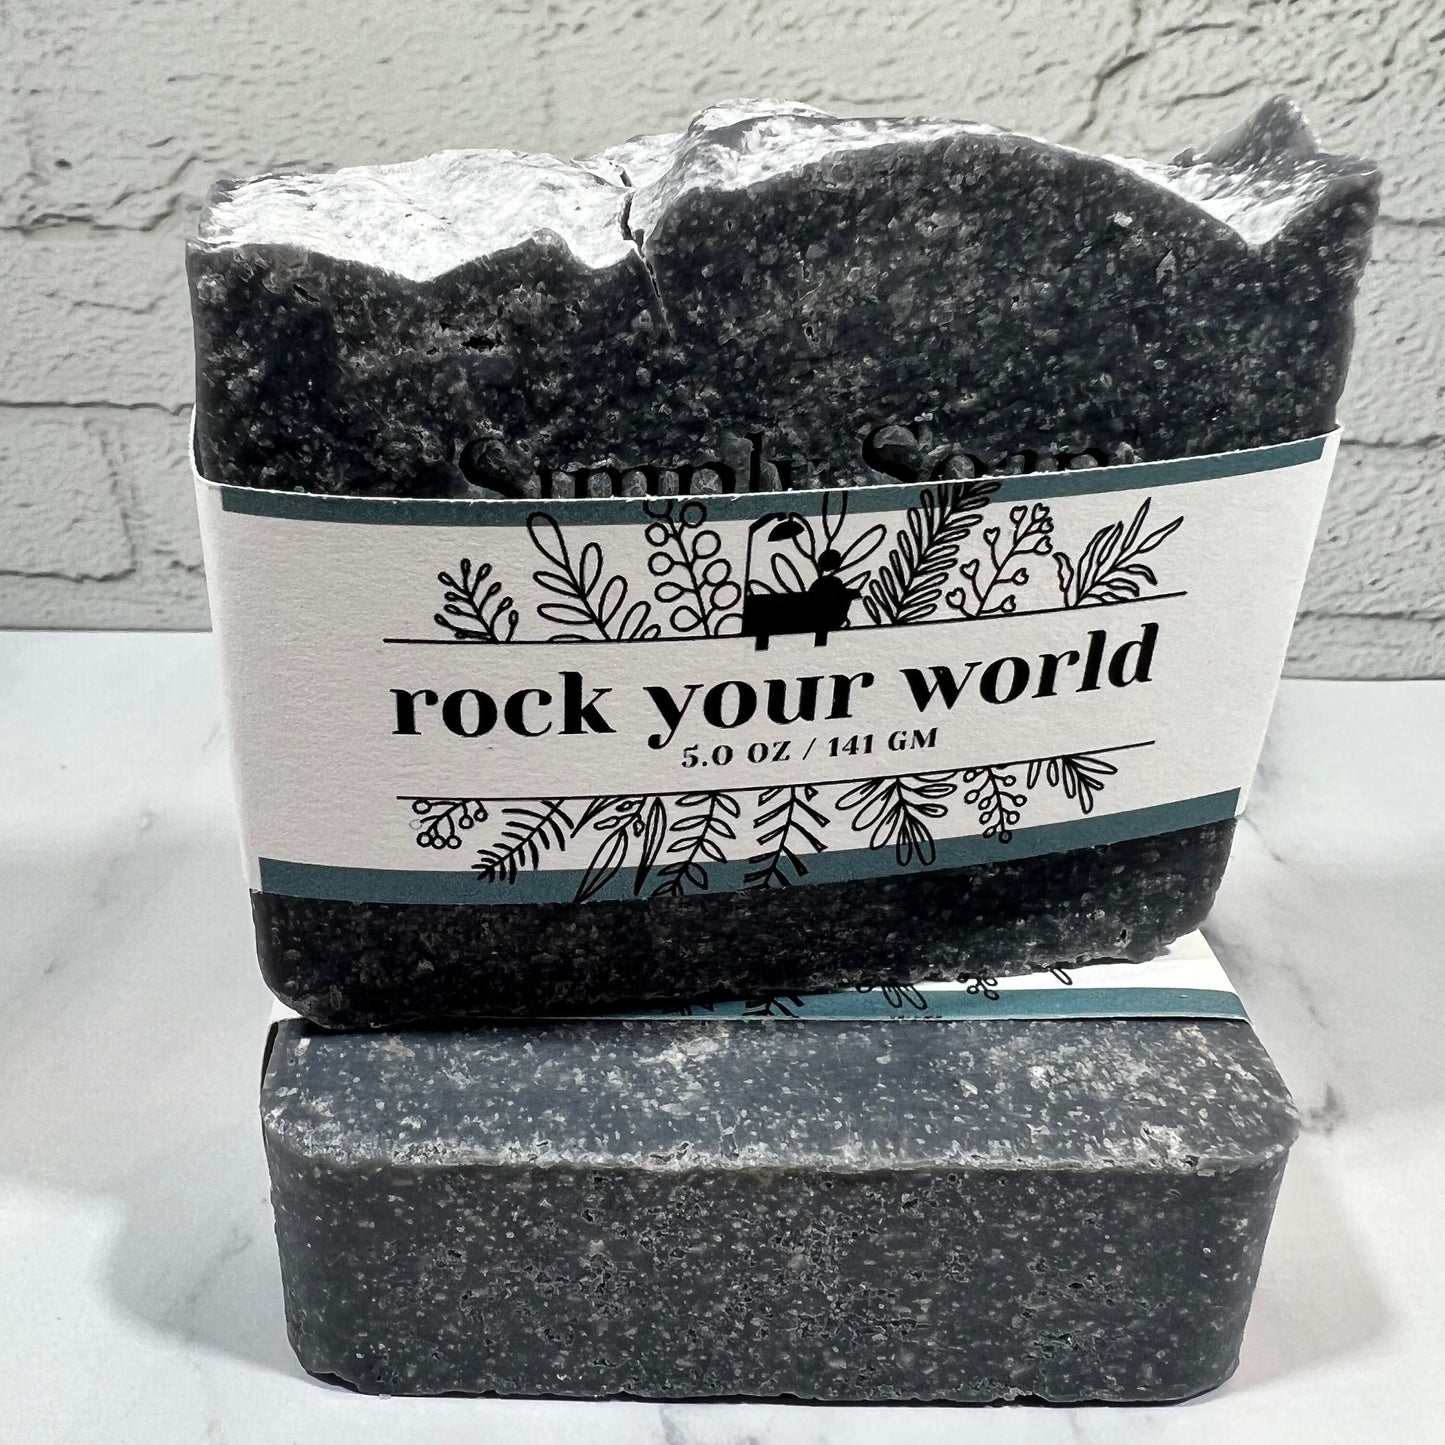 Rock Your World Salt Bar 20% Himalayan Salt with Charcoal. Eucalyptus-Rosemary-Tea Tree